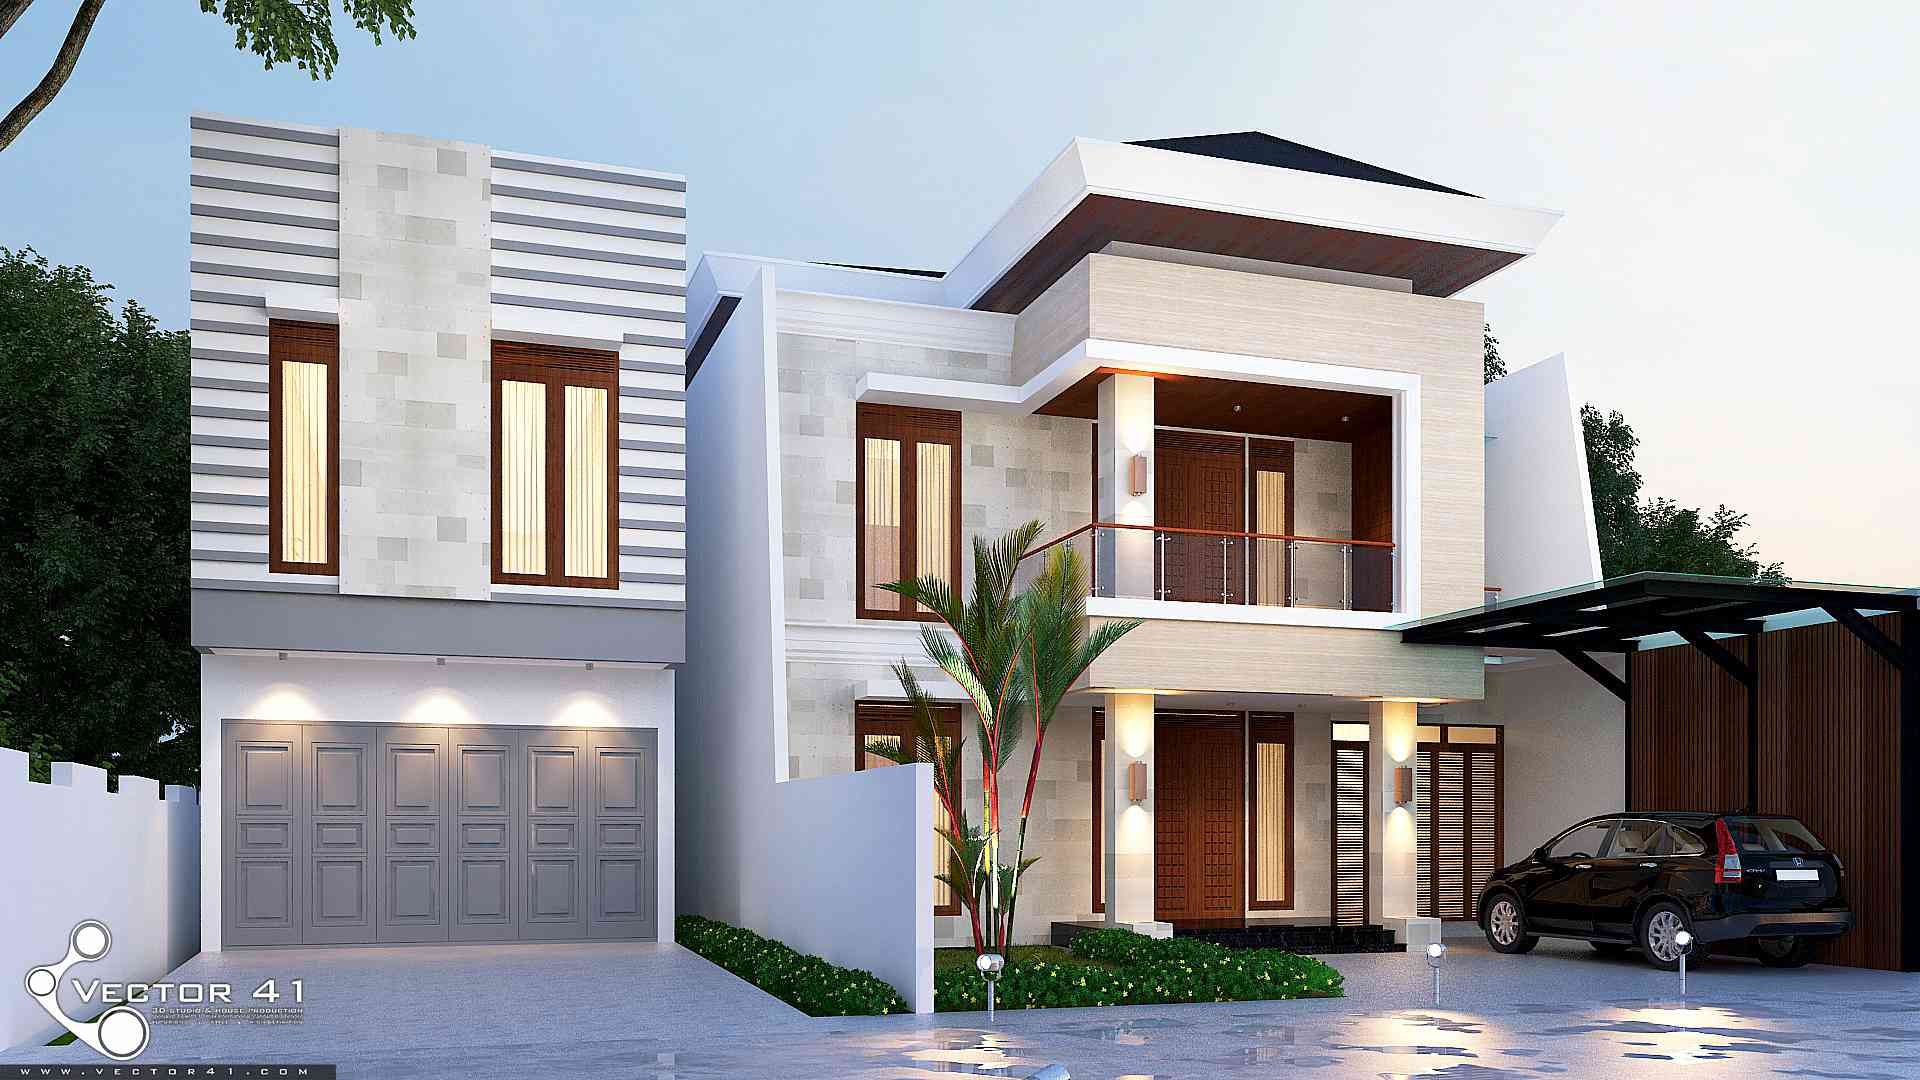 Exterior House_Medan (Mr. Andi), VECTOR41 VECTOR41 Maisons préfabriquées